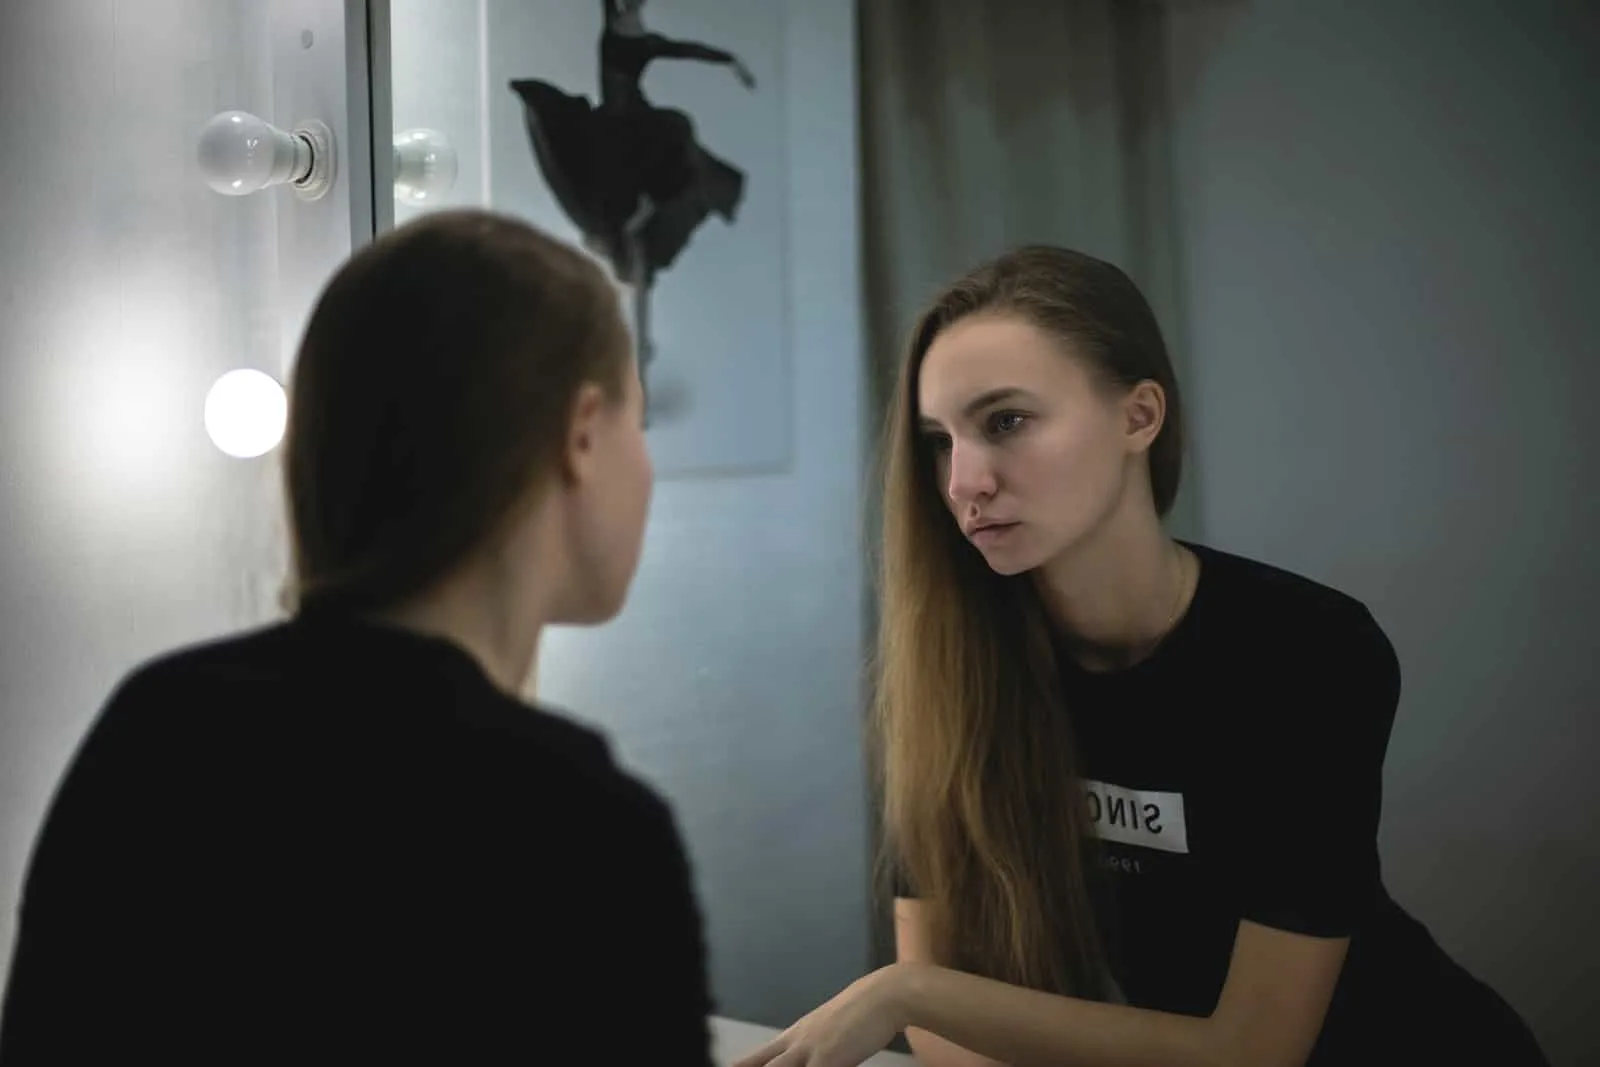 eine traurige Frau in einem schwarzen T-Shirt, die sich in den Spiegel schaut